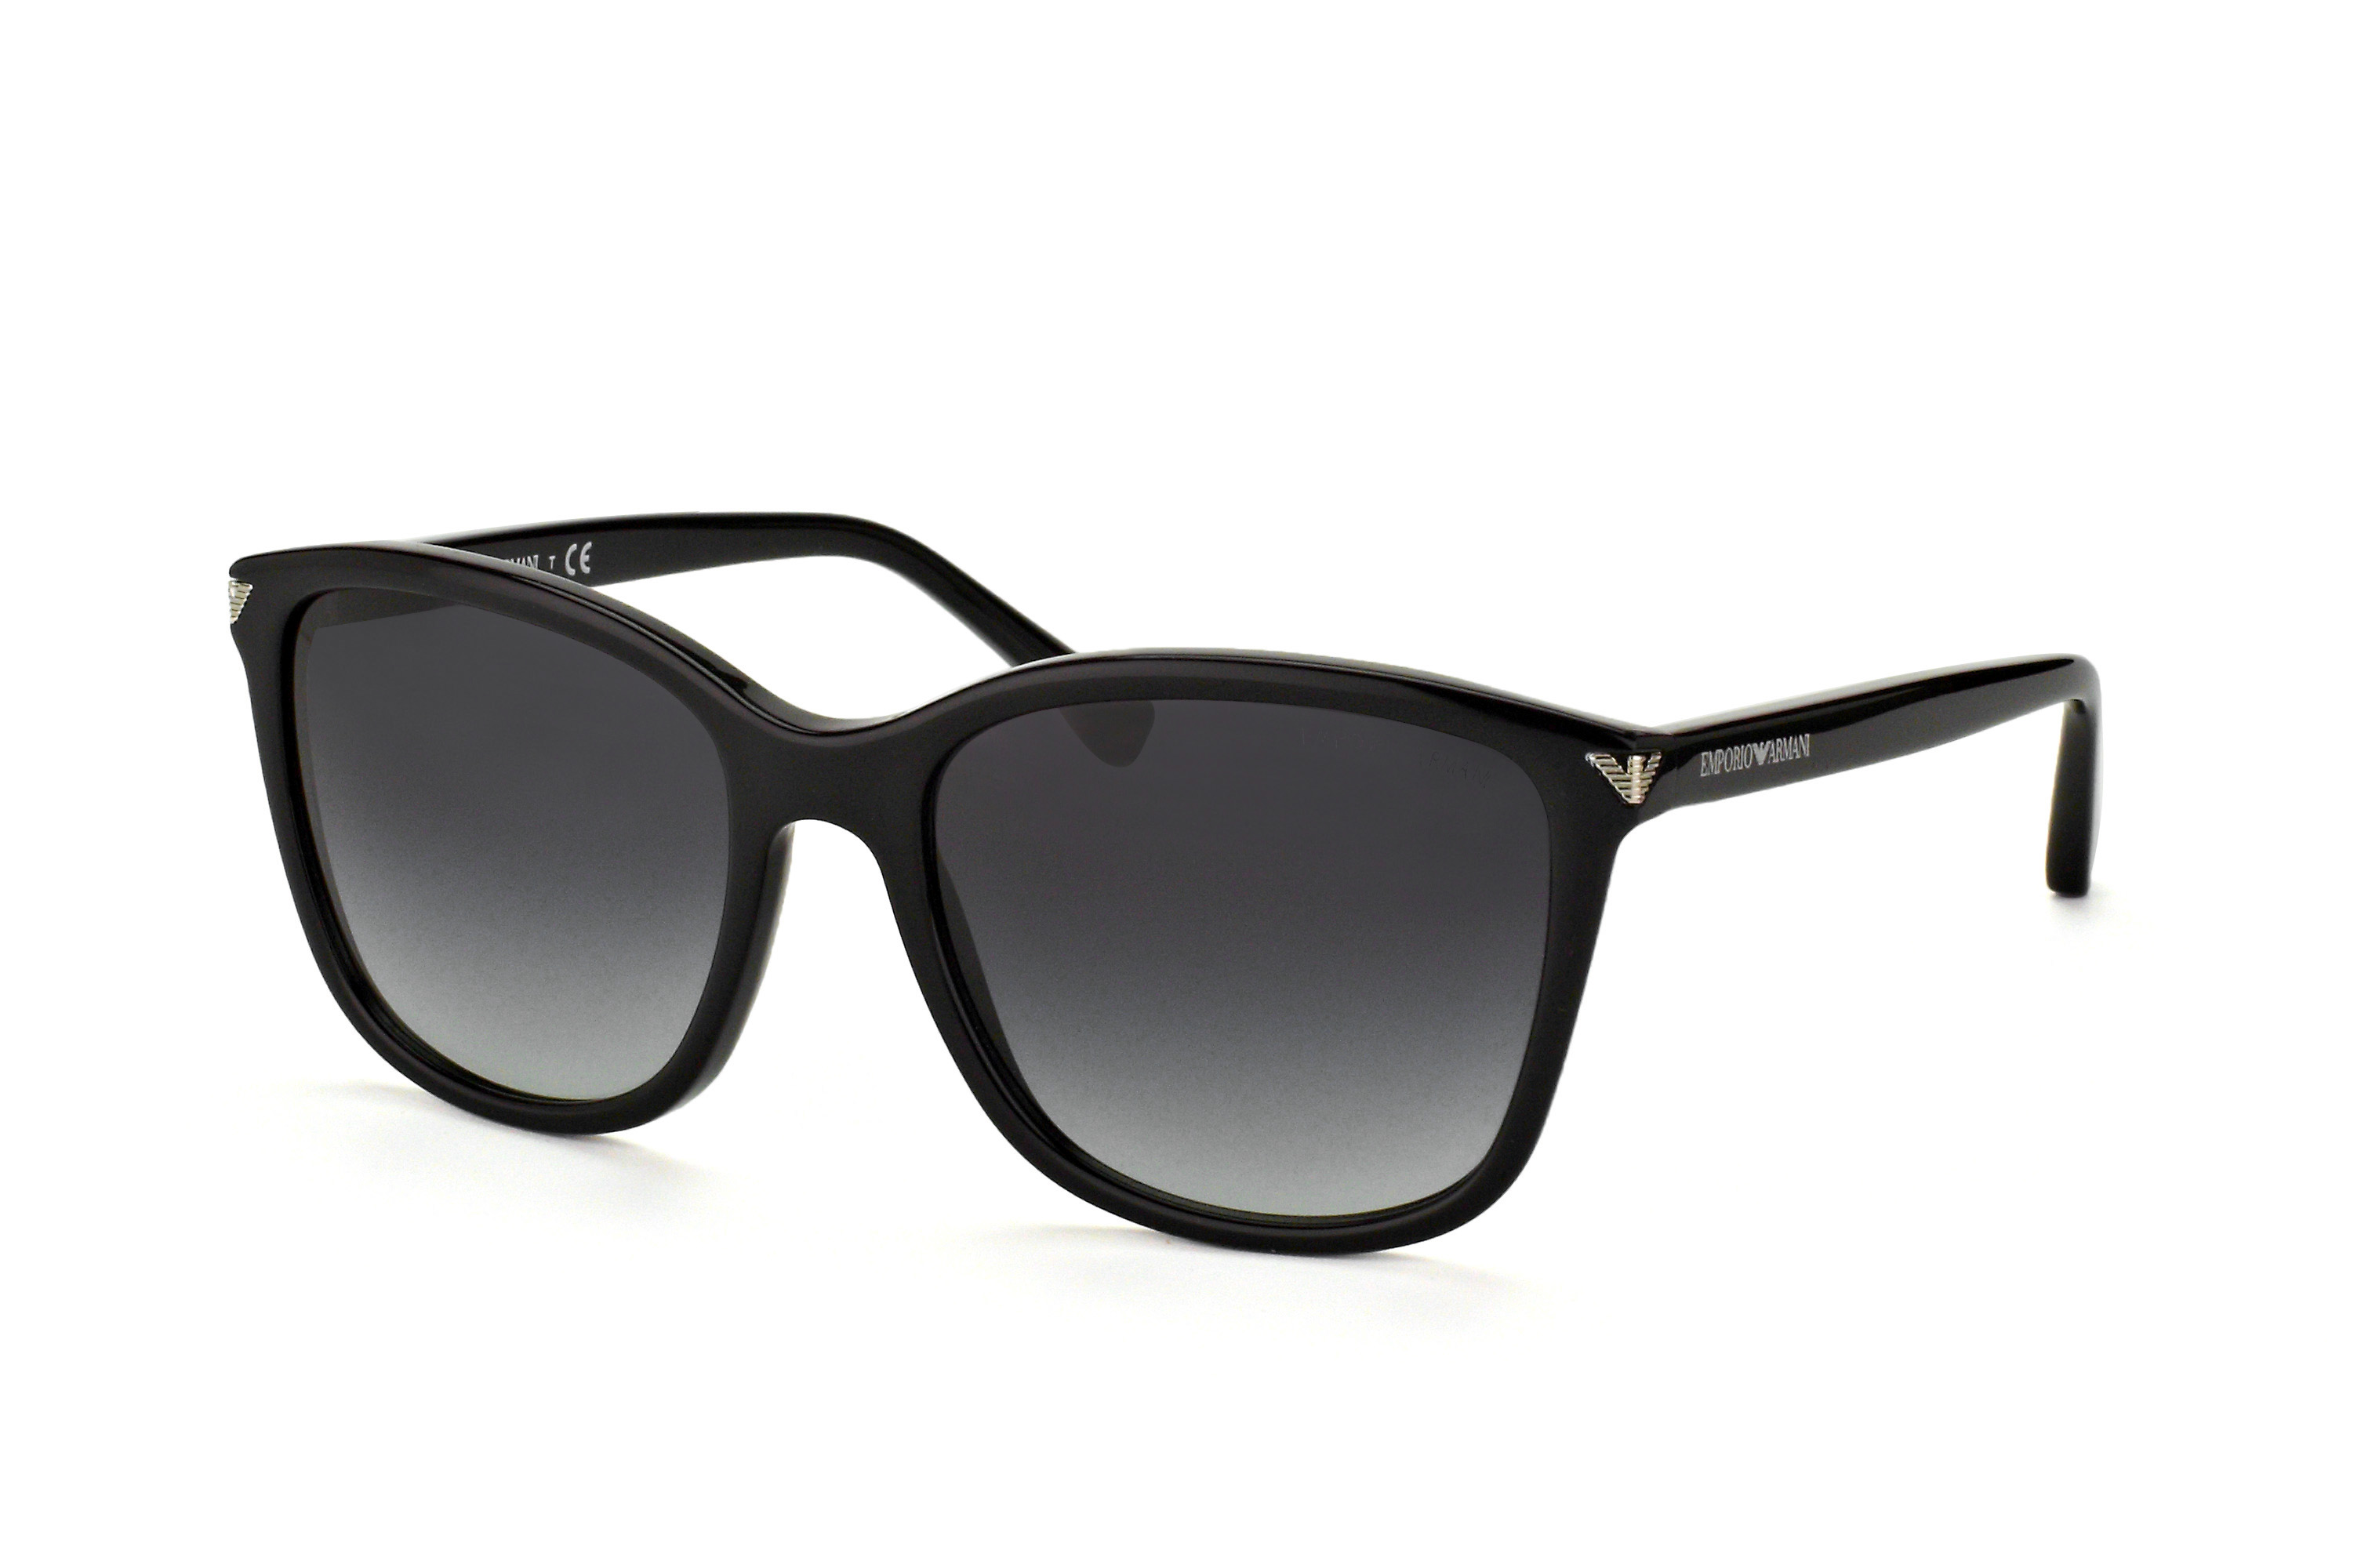 Buy Emporio Armani EA 4060 5017/8G Sunglasses